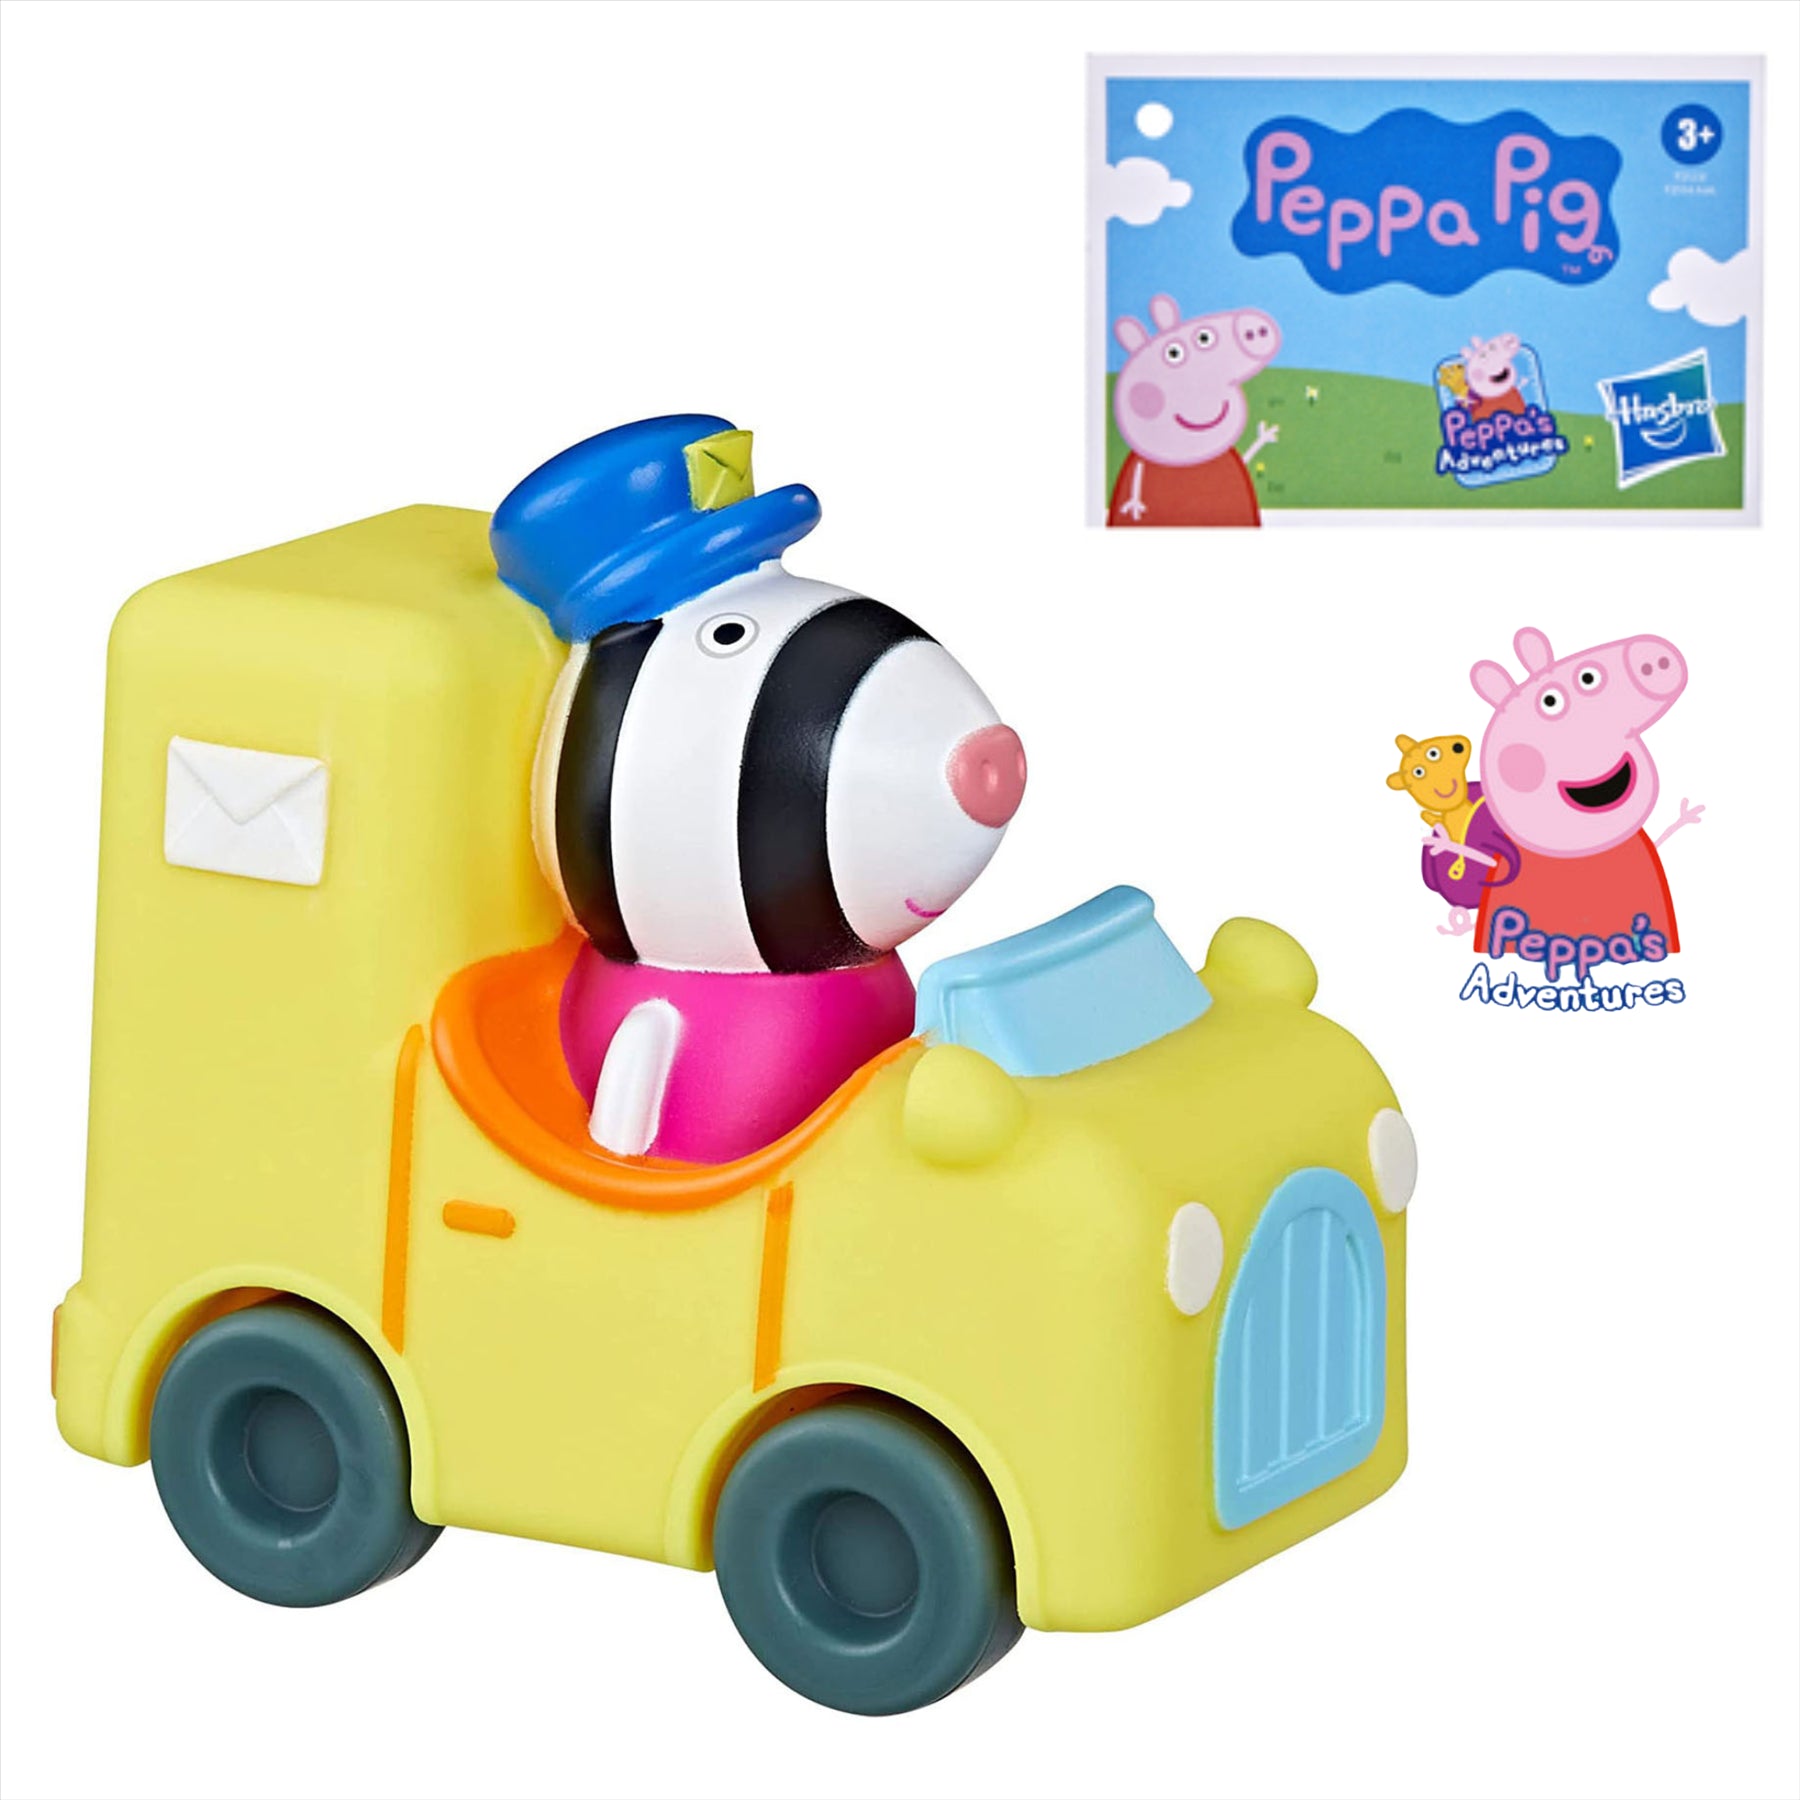 Peppa Pig Little Buggies - Zoe Zebra Figure In Post Van Toy Vehicle - Toptoys2u